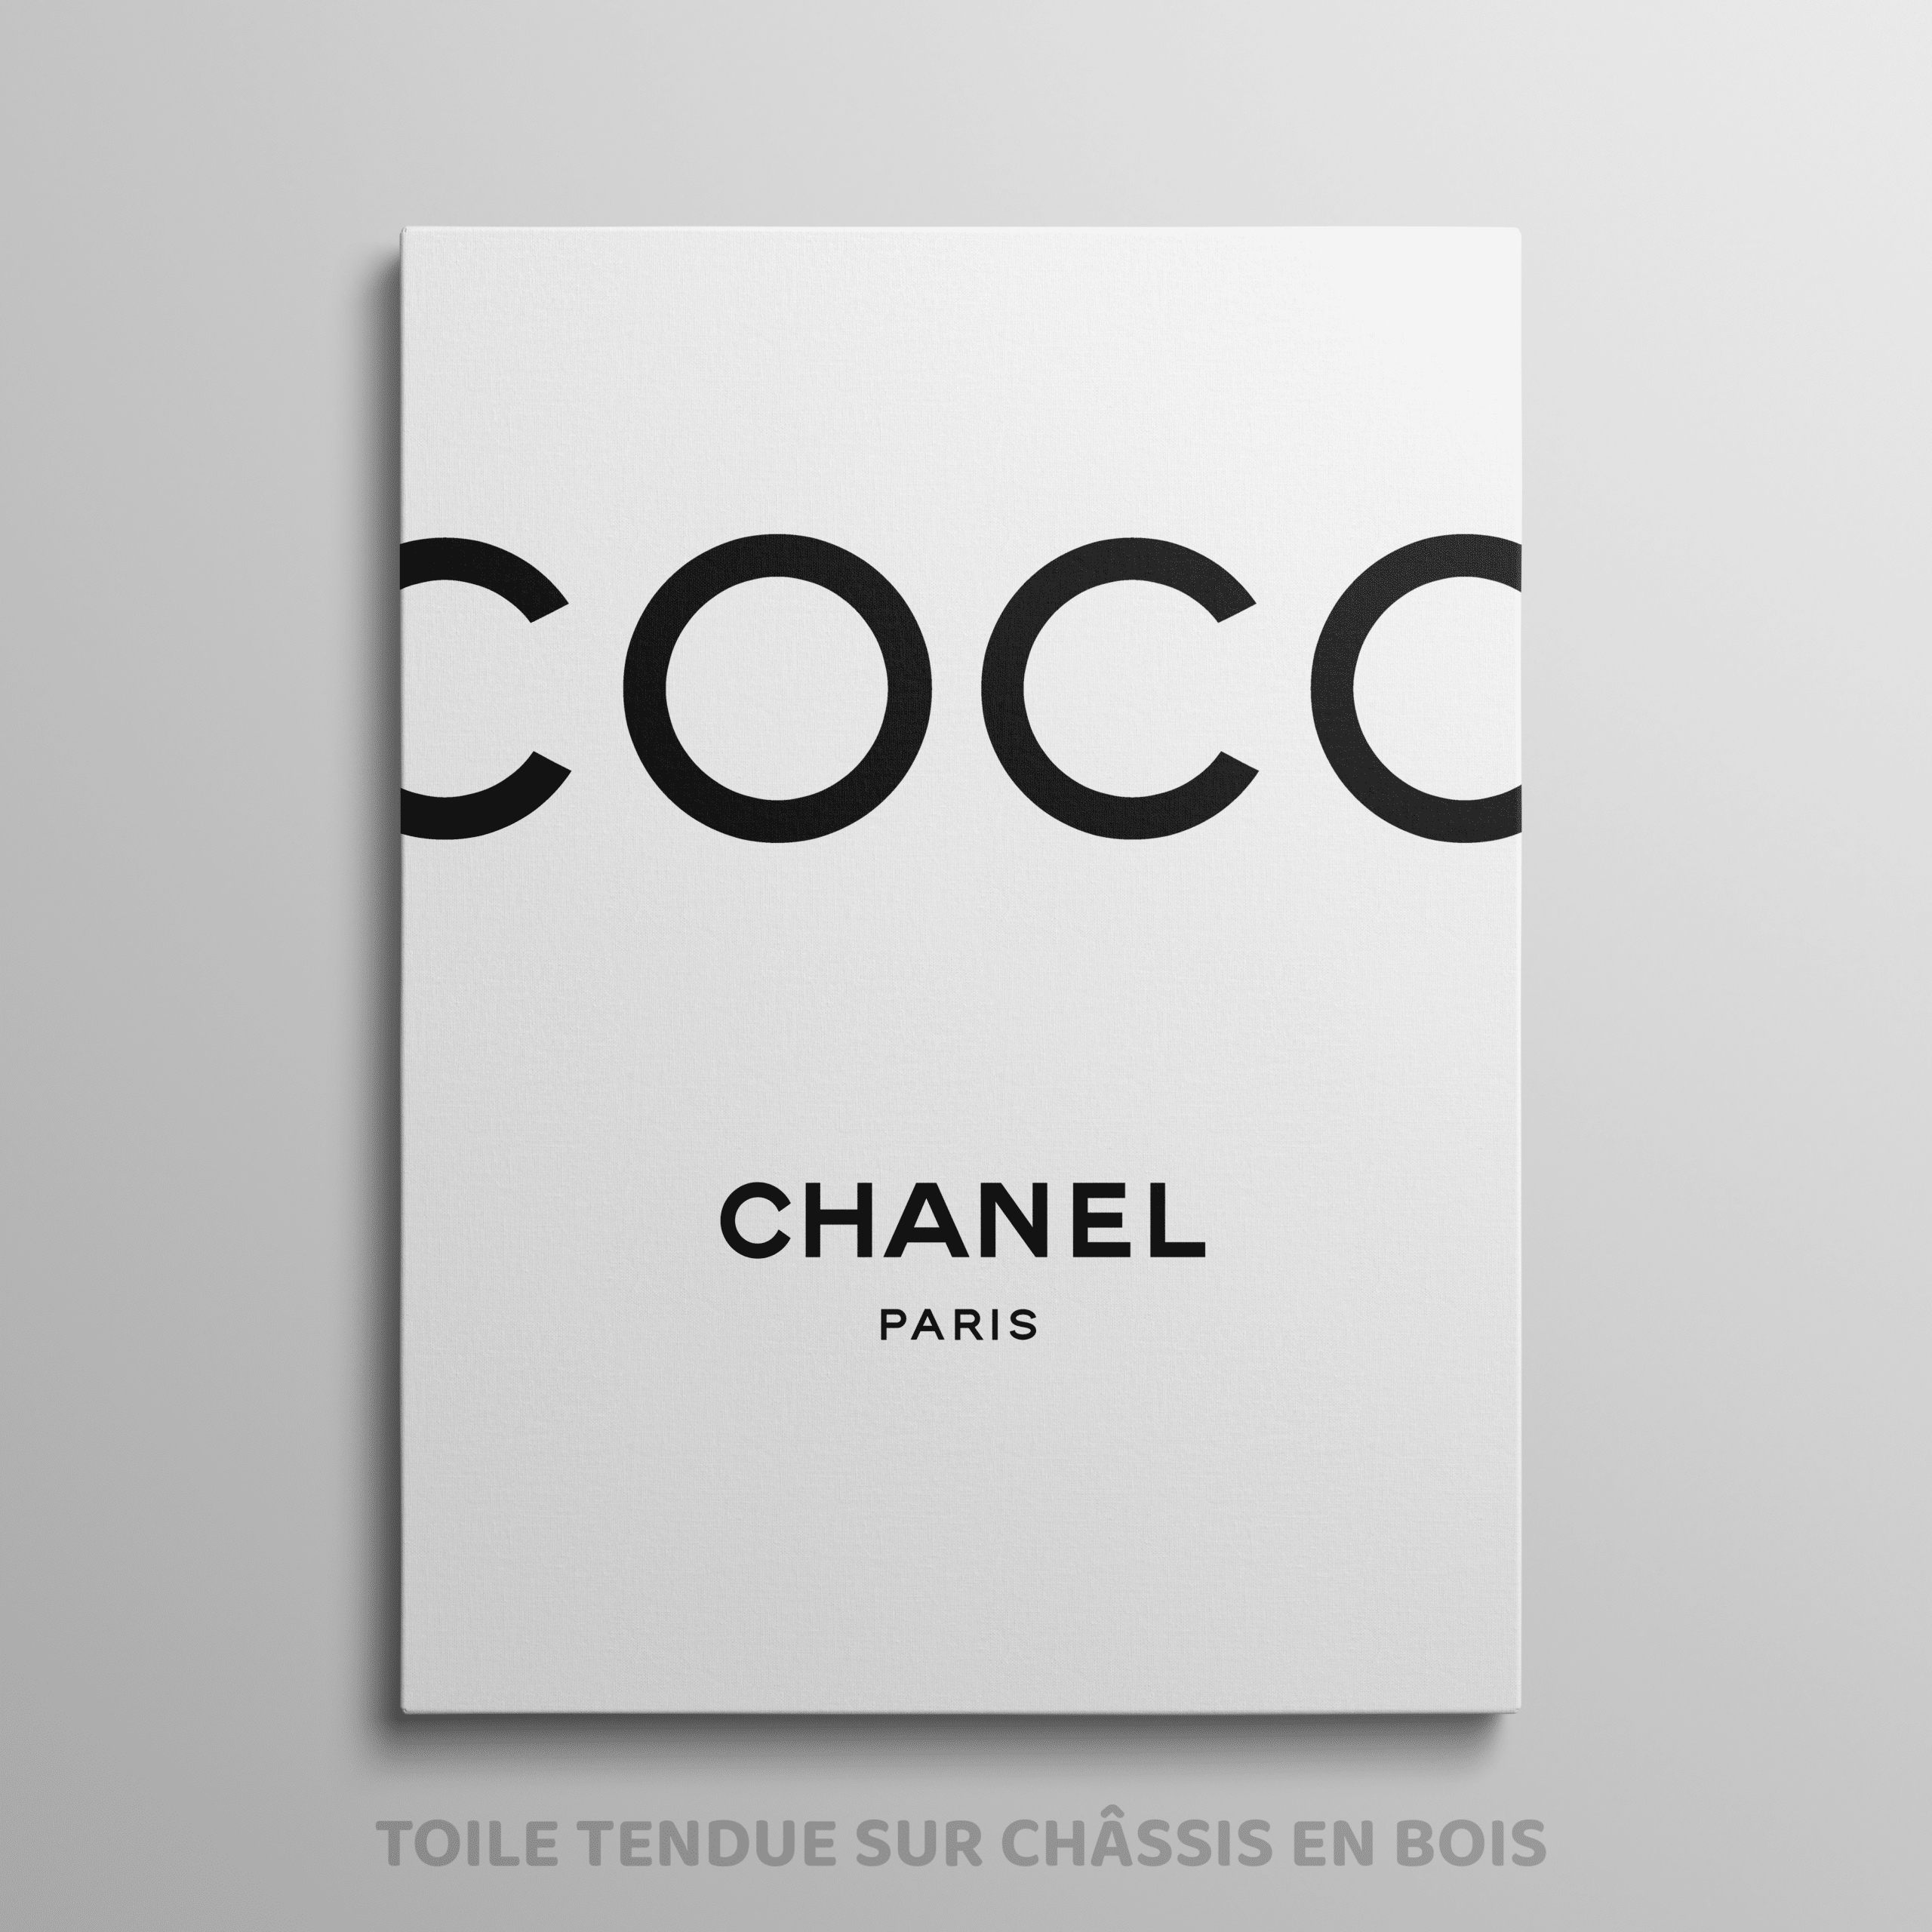 Coco Chanel 1967 - Photo et Tableau - Editions Limitées - Achat / Vente